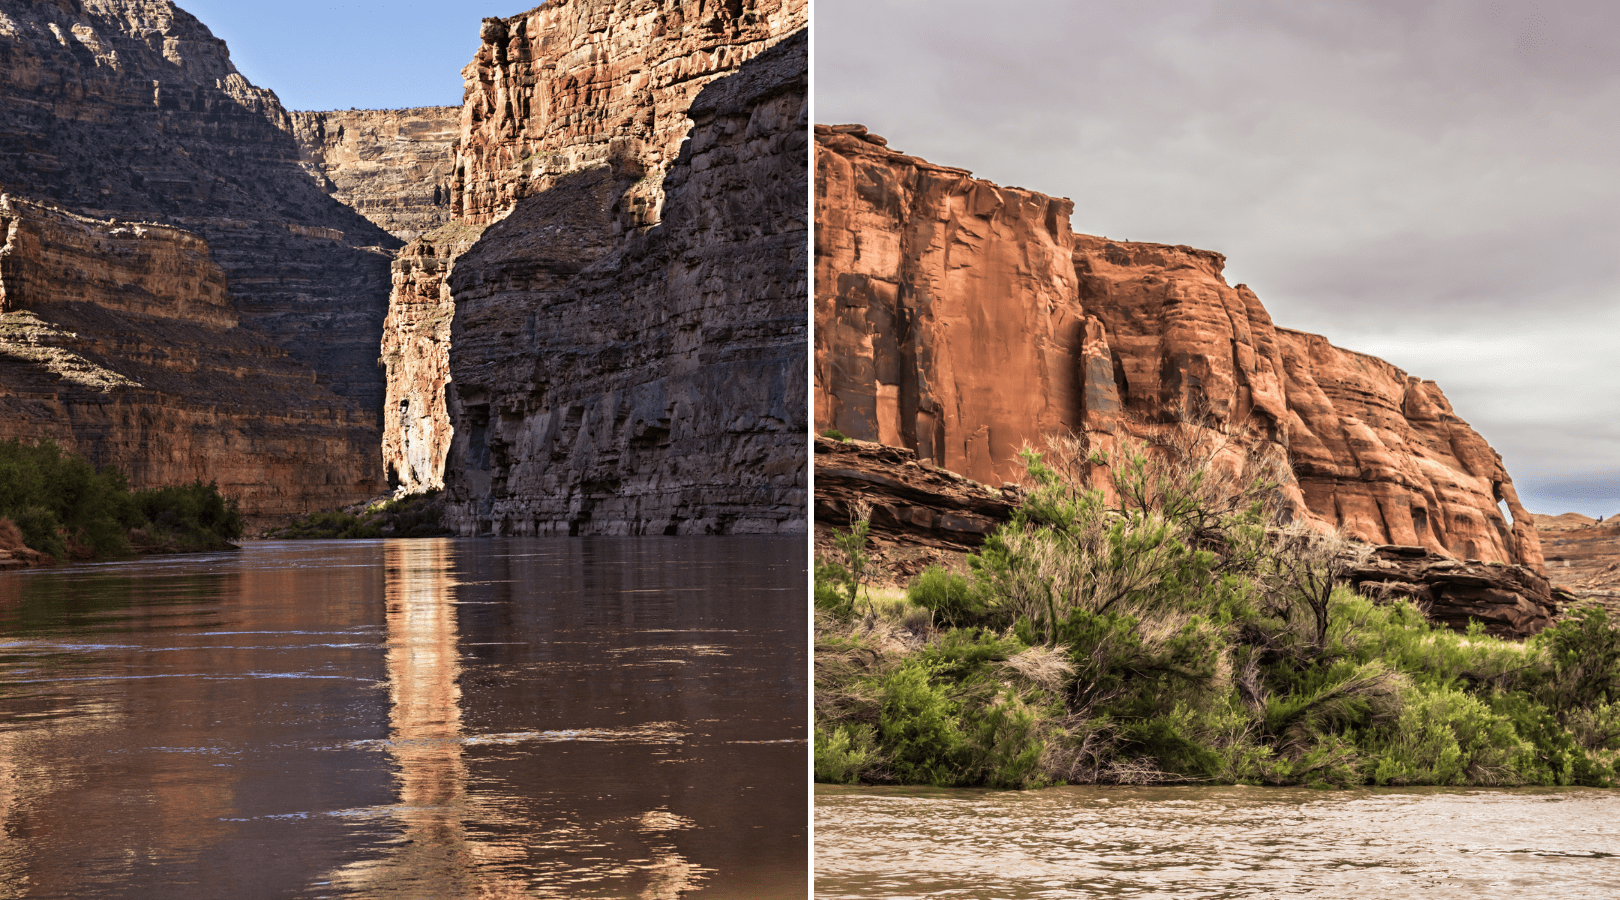 2 photos of Cataract Canyon on the colorado river